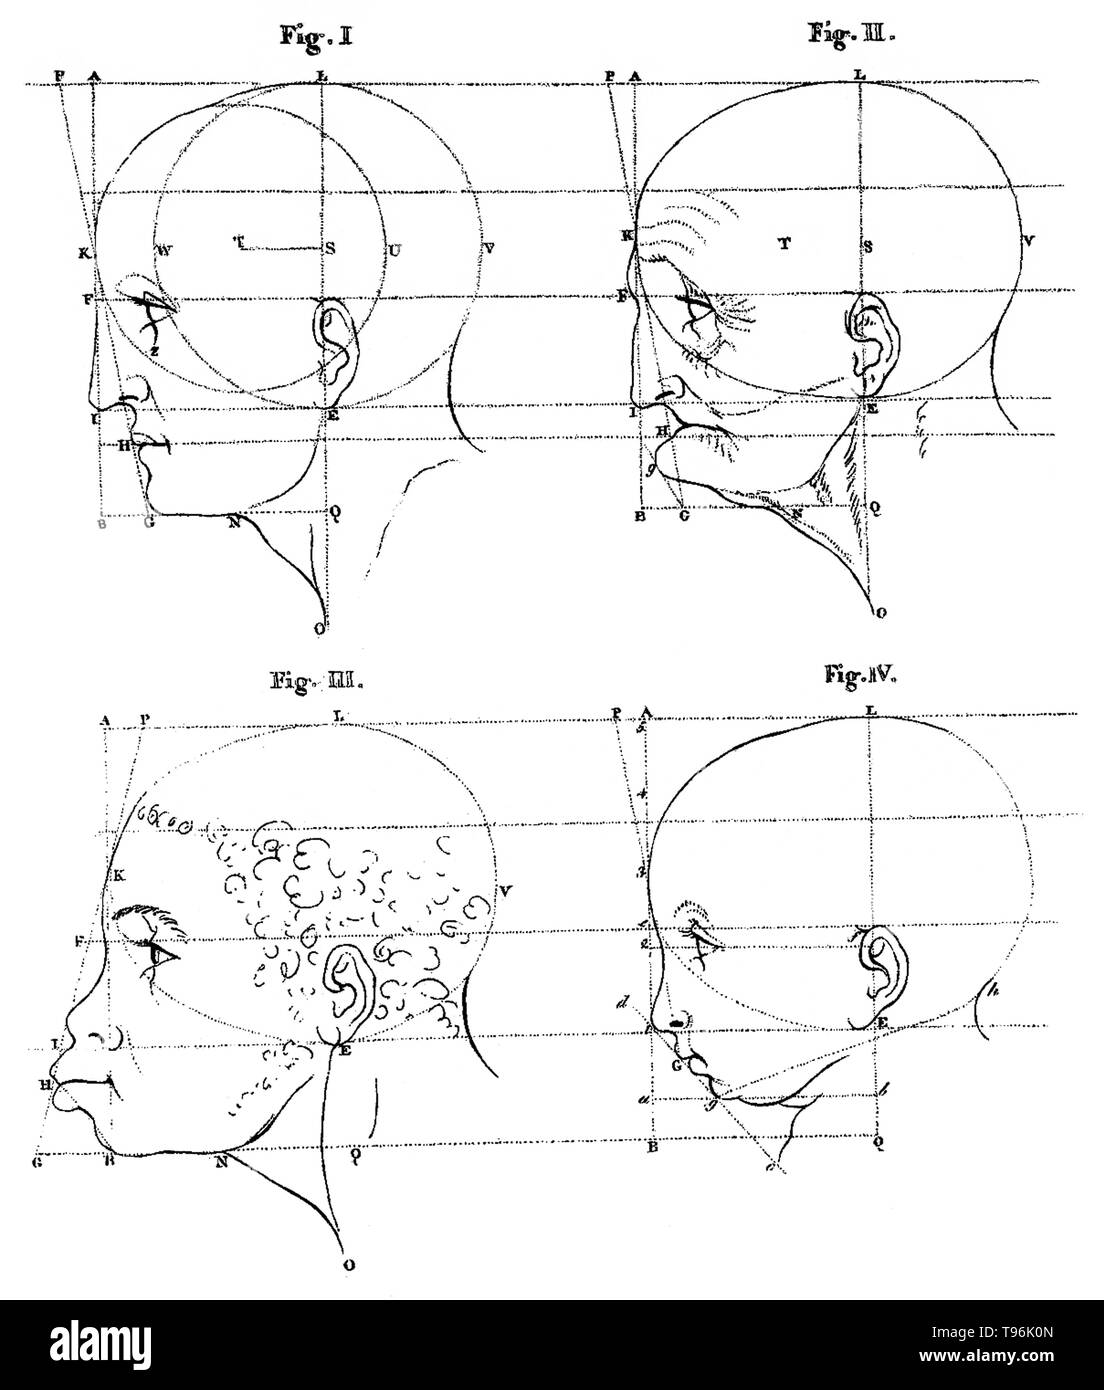 Les dessins des chefs en proportionnelle profil. Les angles du visage fait référence au contenu de deux conférences données par Petrus Camper le 1 août et 8ème en 1770 à l'Académie de dessin d'Amsterdam. Principaux points du campeur dans son premier cours n'étaient que des leçons de dessin classique de l'époque de Vitruve, y compris les enseignements de Dürer et Perreault, étaient basés sur une hypothèse erronée que la tête humaine était de forme ovale, à tous les âges, et il s'est mis à le prouver avec ses dimensions des crânes. Banque D'Images